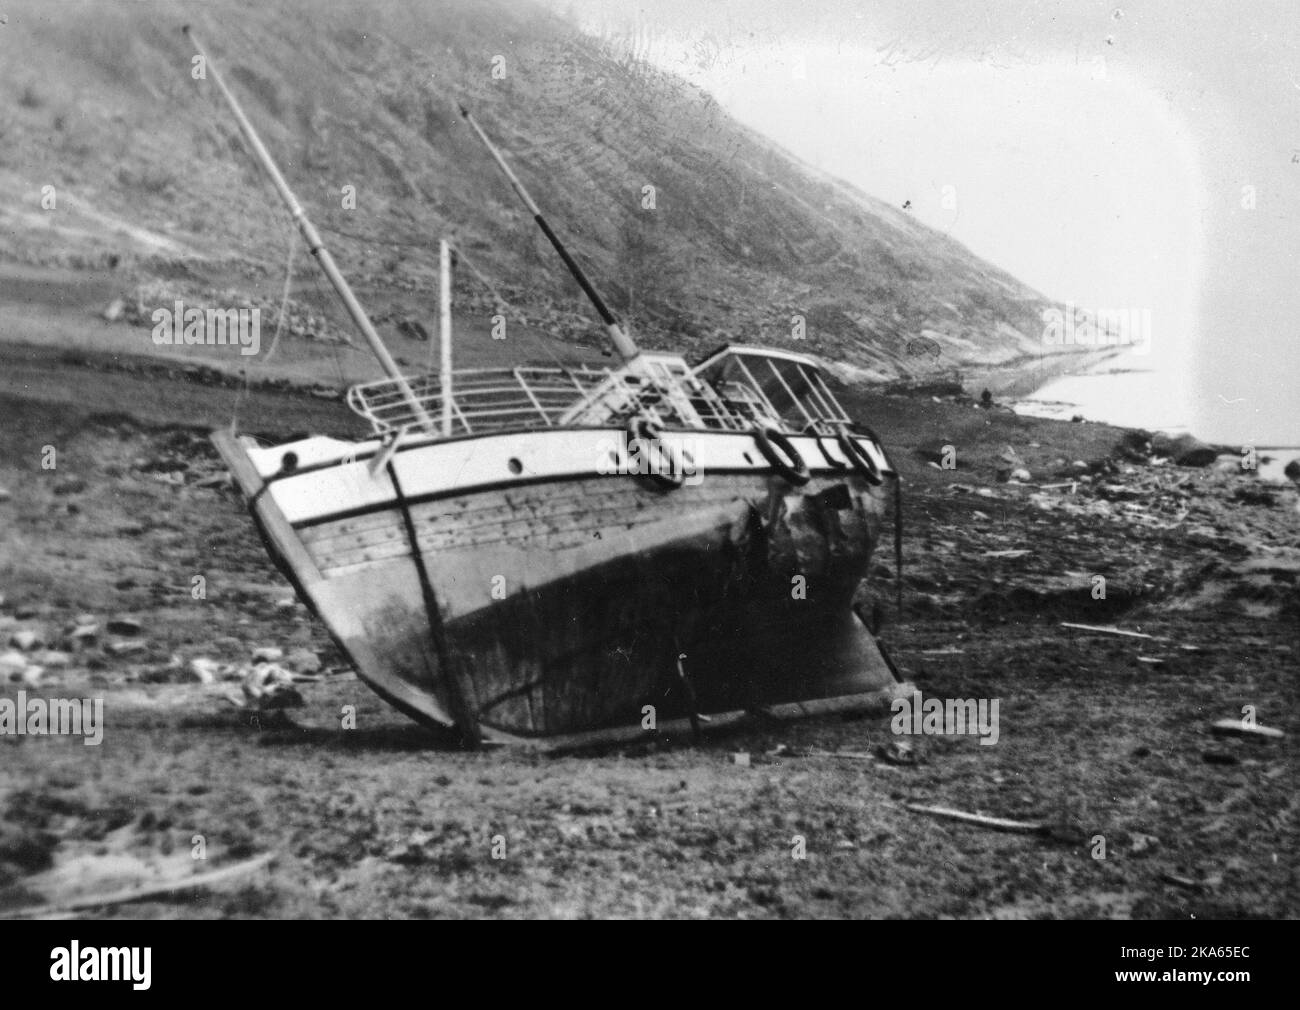 La notte del 7th aprile 1934 una frana di roccia cadde dal monte Langhamaren. La roccia sbarcò a Tafjorden che creò uno tsunami locale. Questo devastò l'insediamento sul mare a Tafjord, 30 case furono distrutte e completamente corrotte. Una nave viene mostrata bloccata a terra Foto Stock